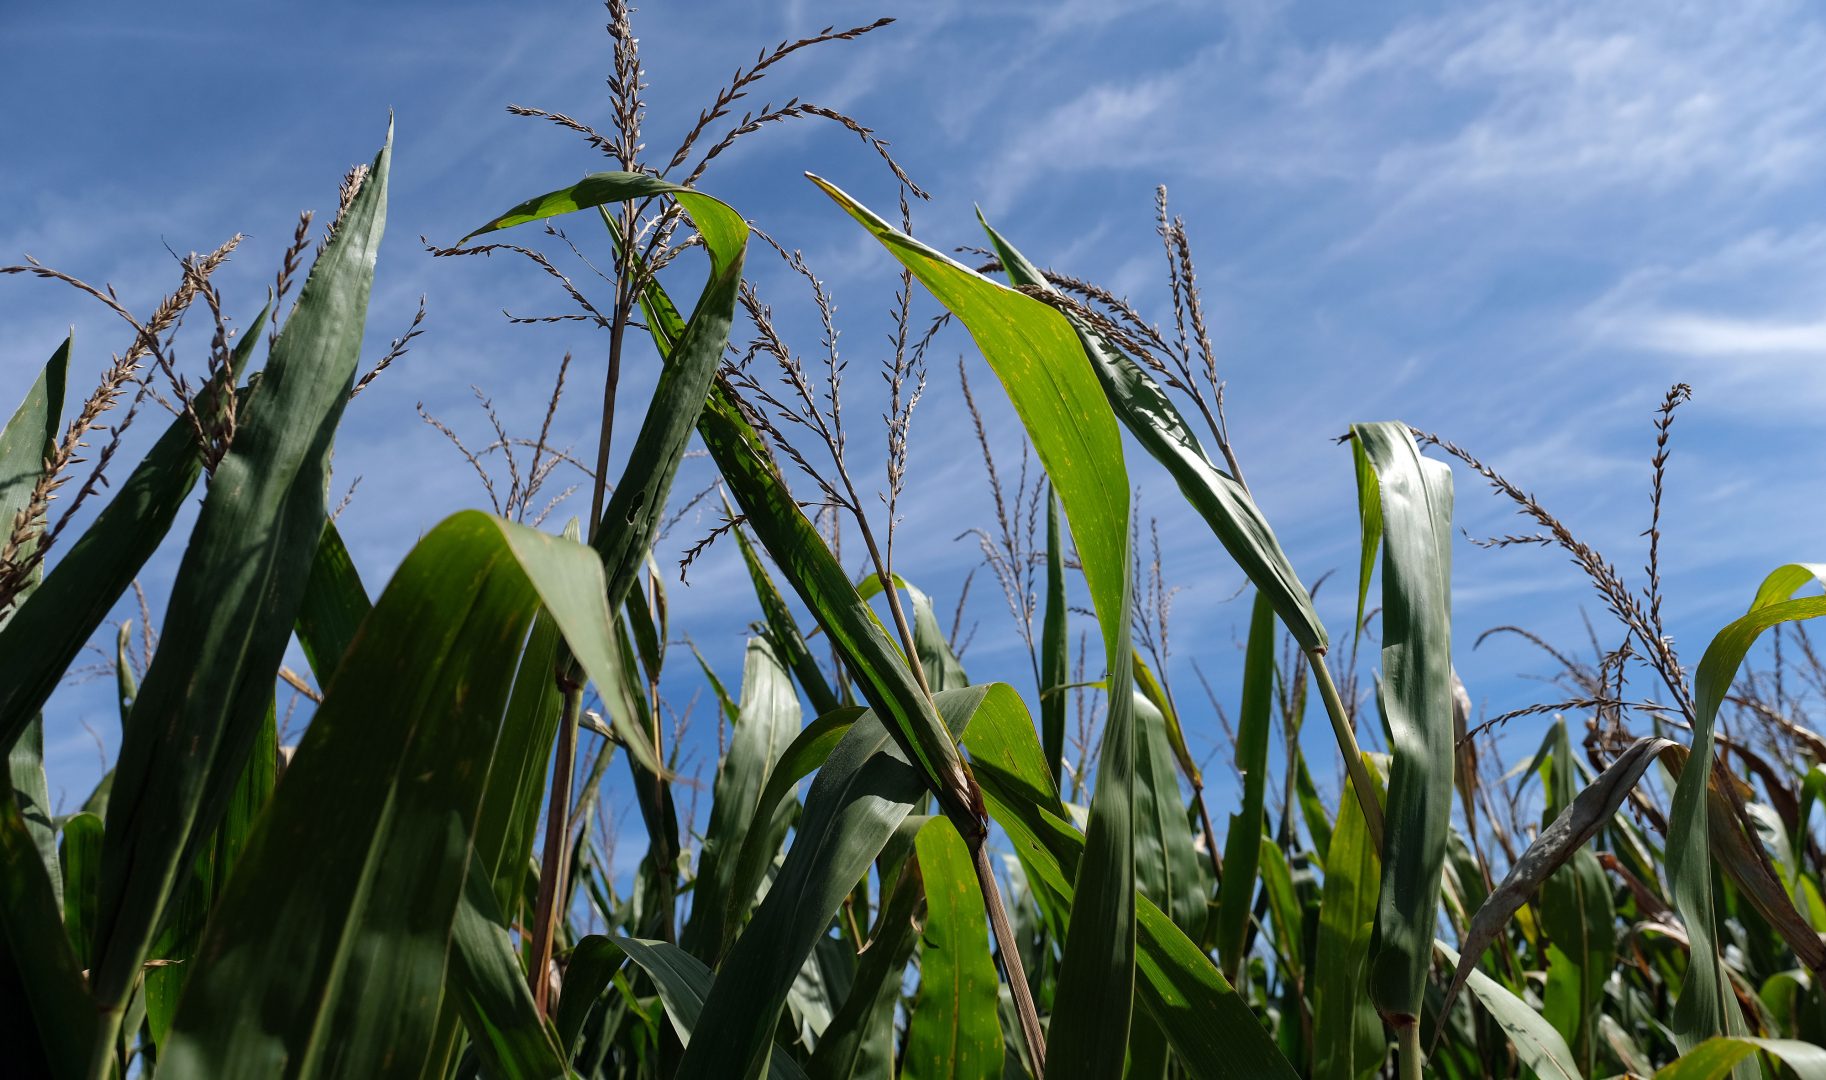 Corn grows on land farmed by grain farmer Jesse Poliskiewicz on Sept. 20, 2019, in Upper Mount Bethel Township, Pennsylvania.